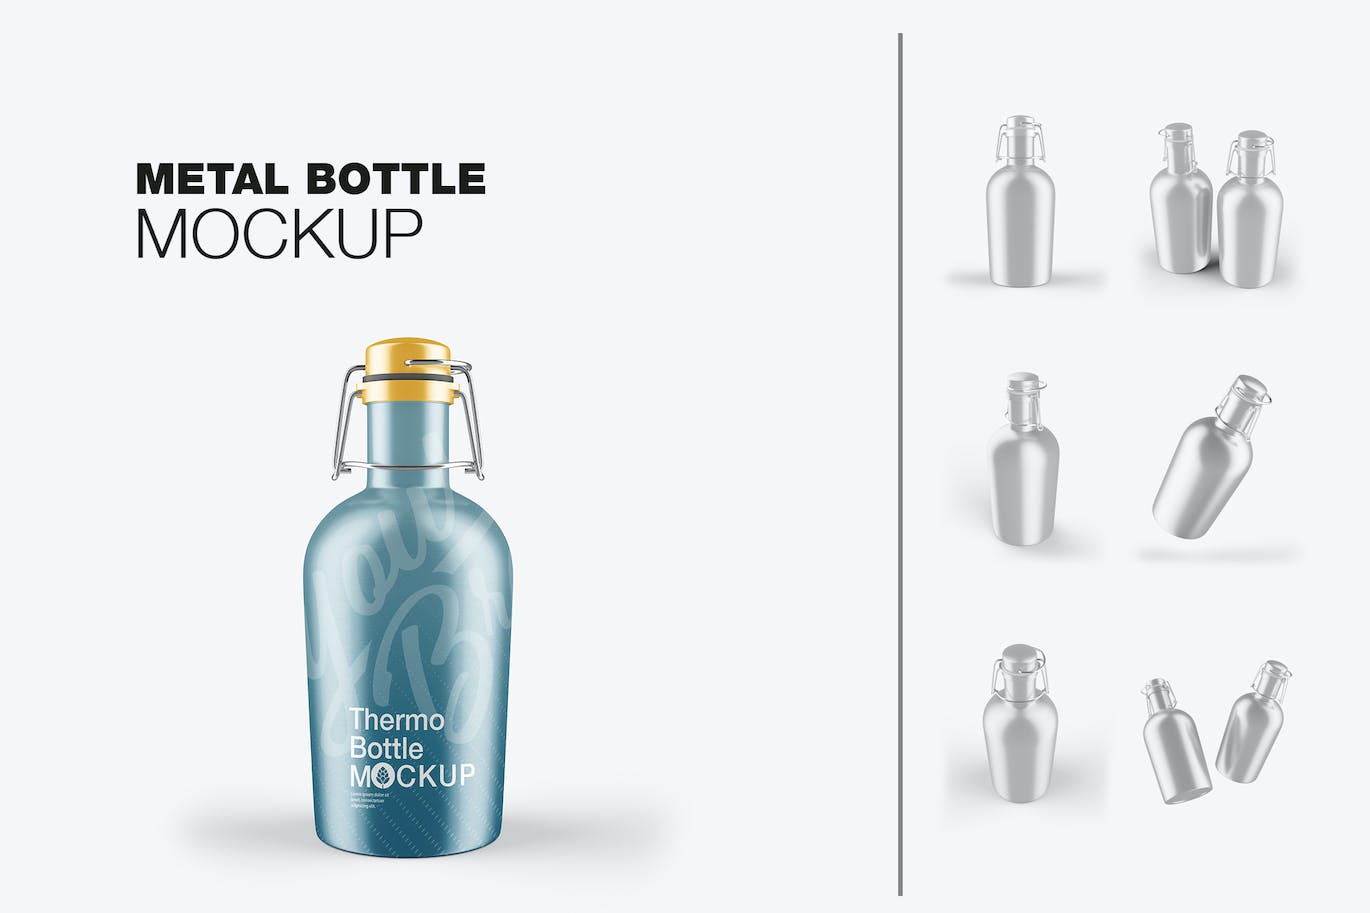 金属热水瓶包装设计样机 Thermo Bottle Mockup 样机素材 第1张